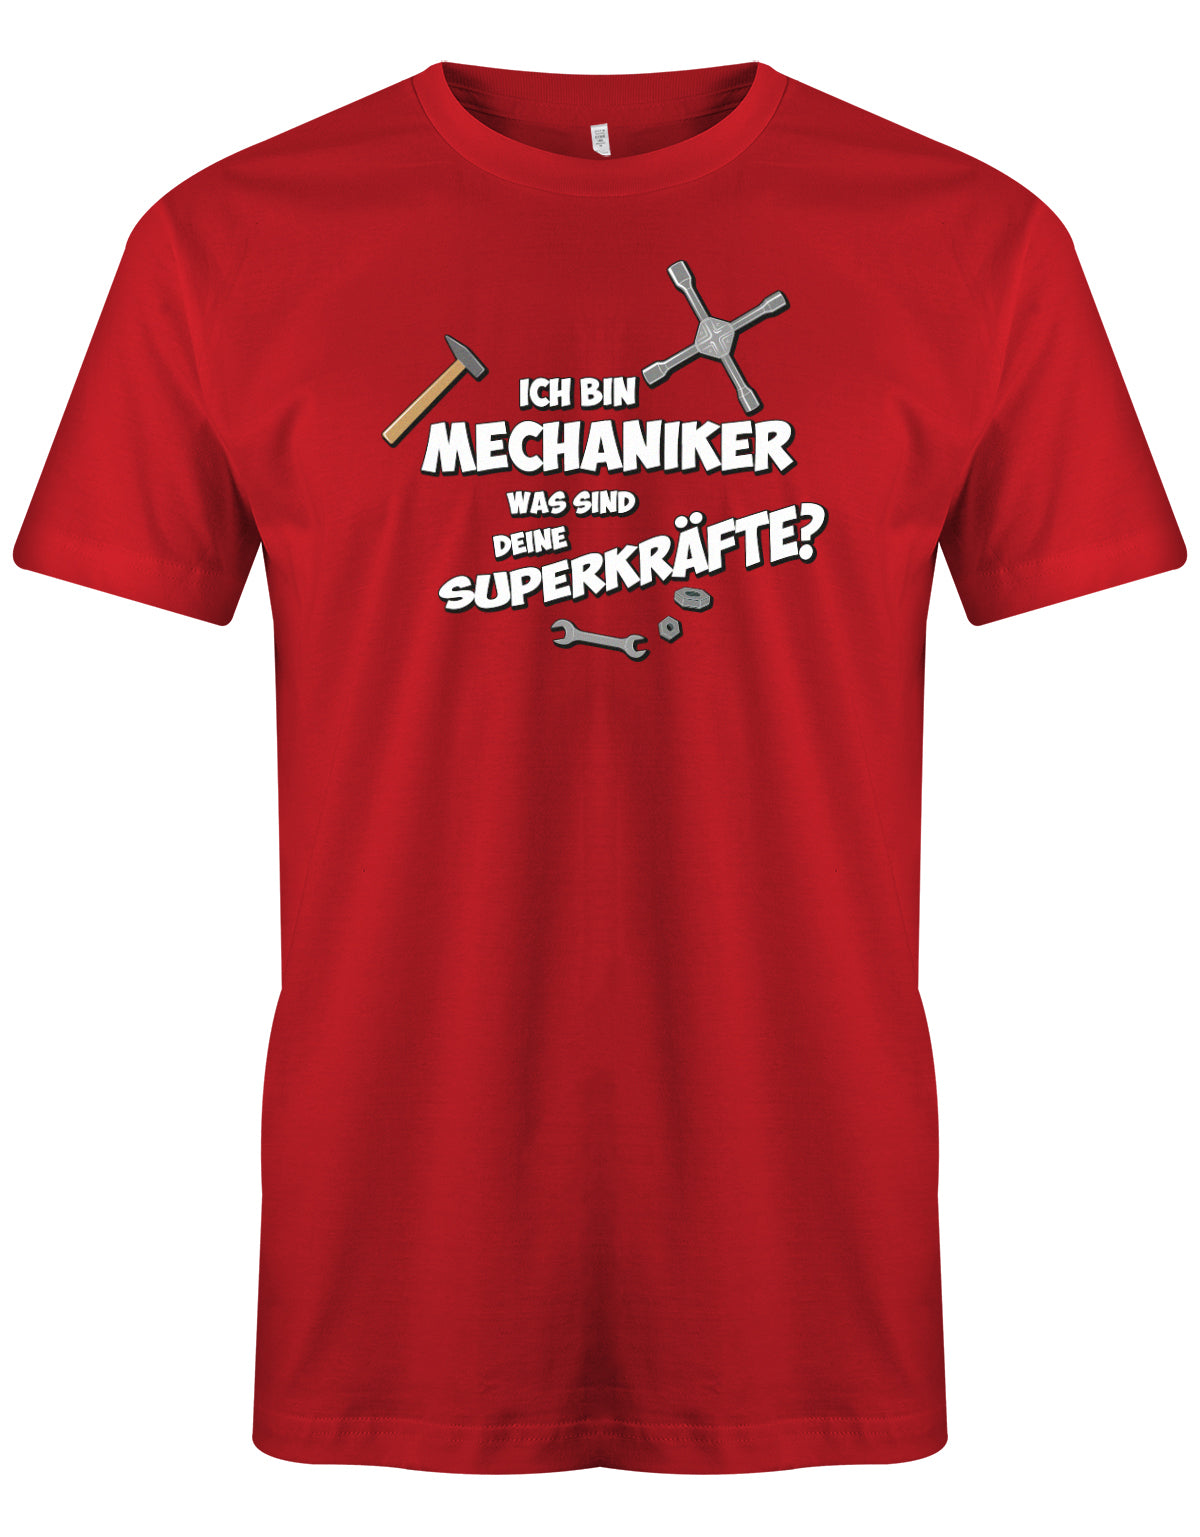 KFZ Mechaniker Shirt - Ich bin Mechaniker was sind deine Superkräfte? Rot